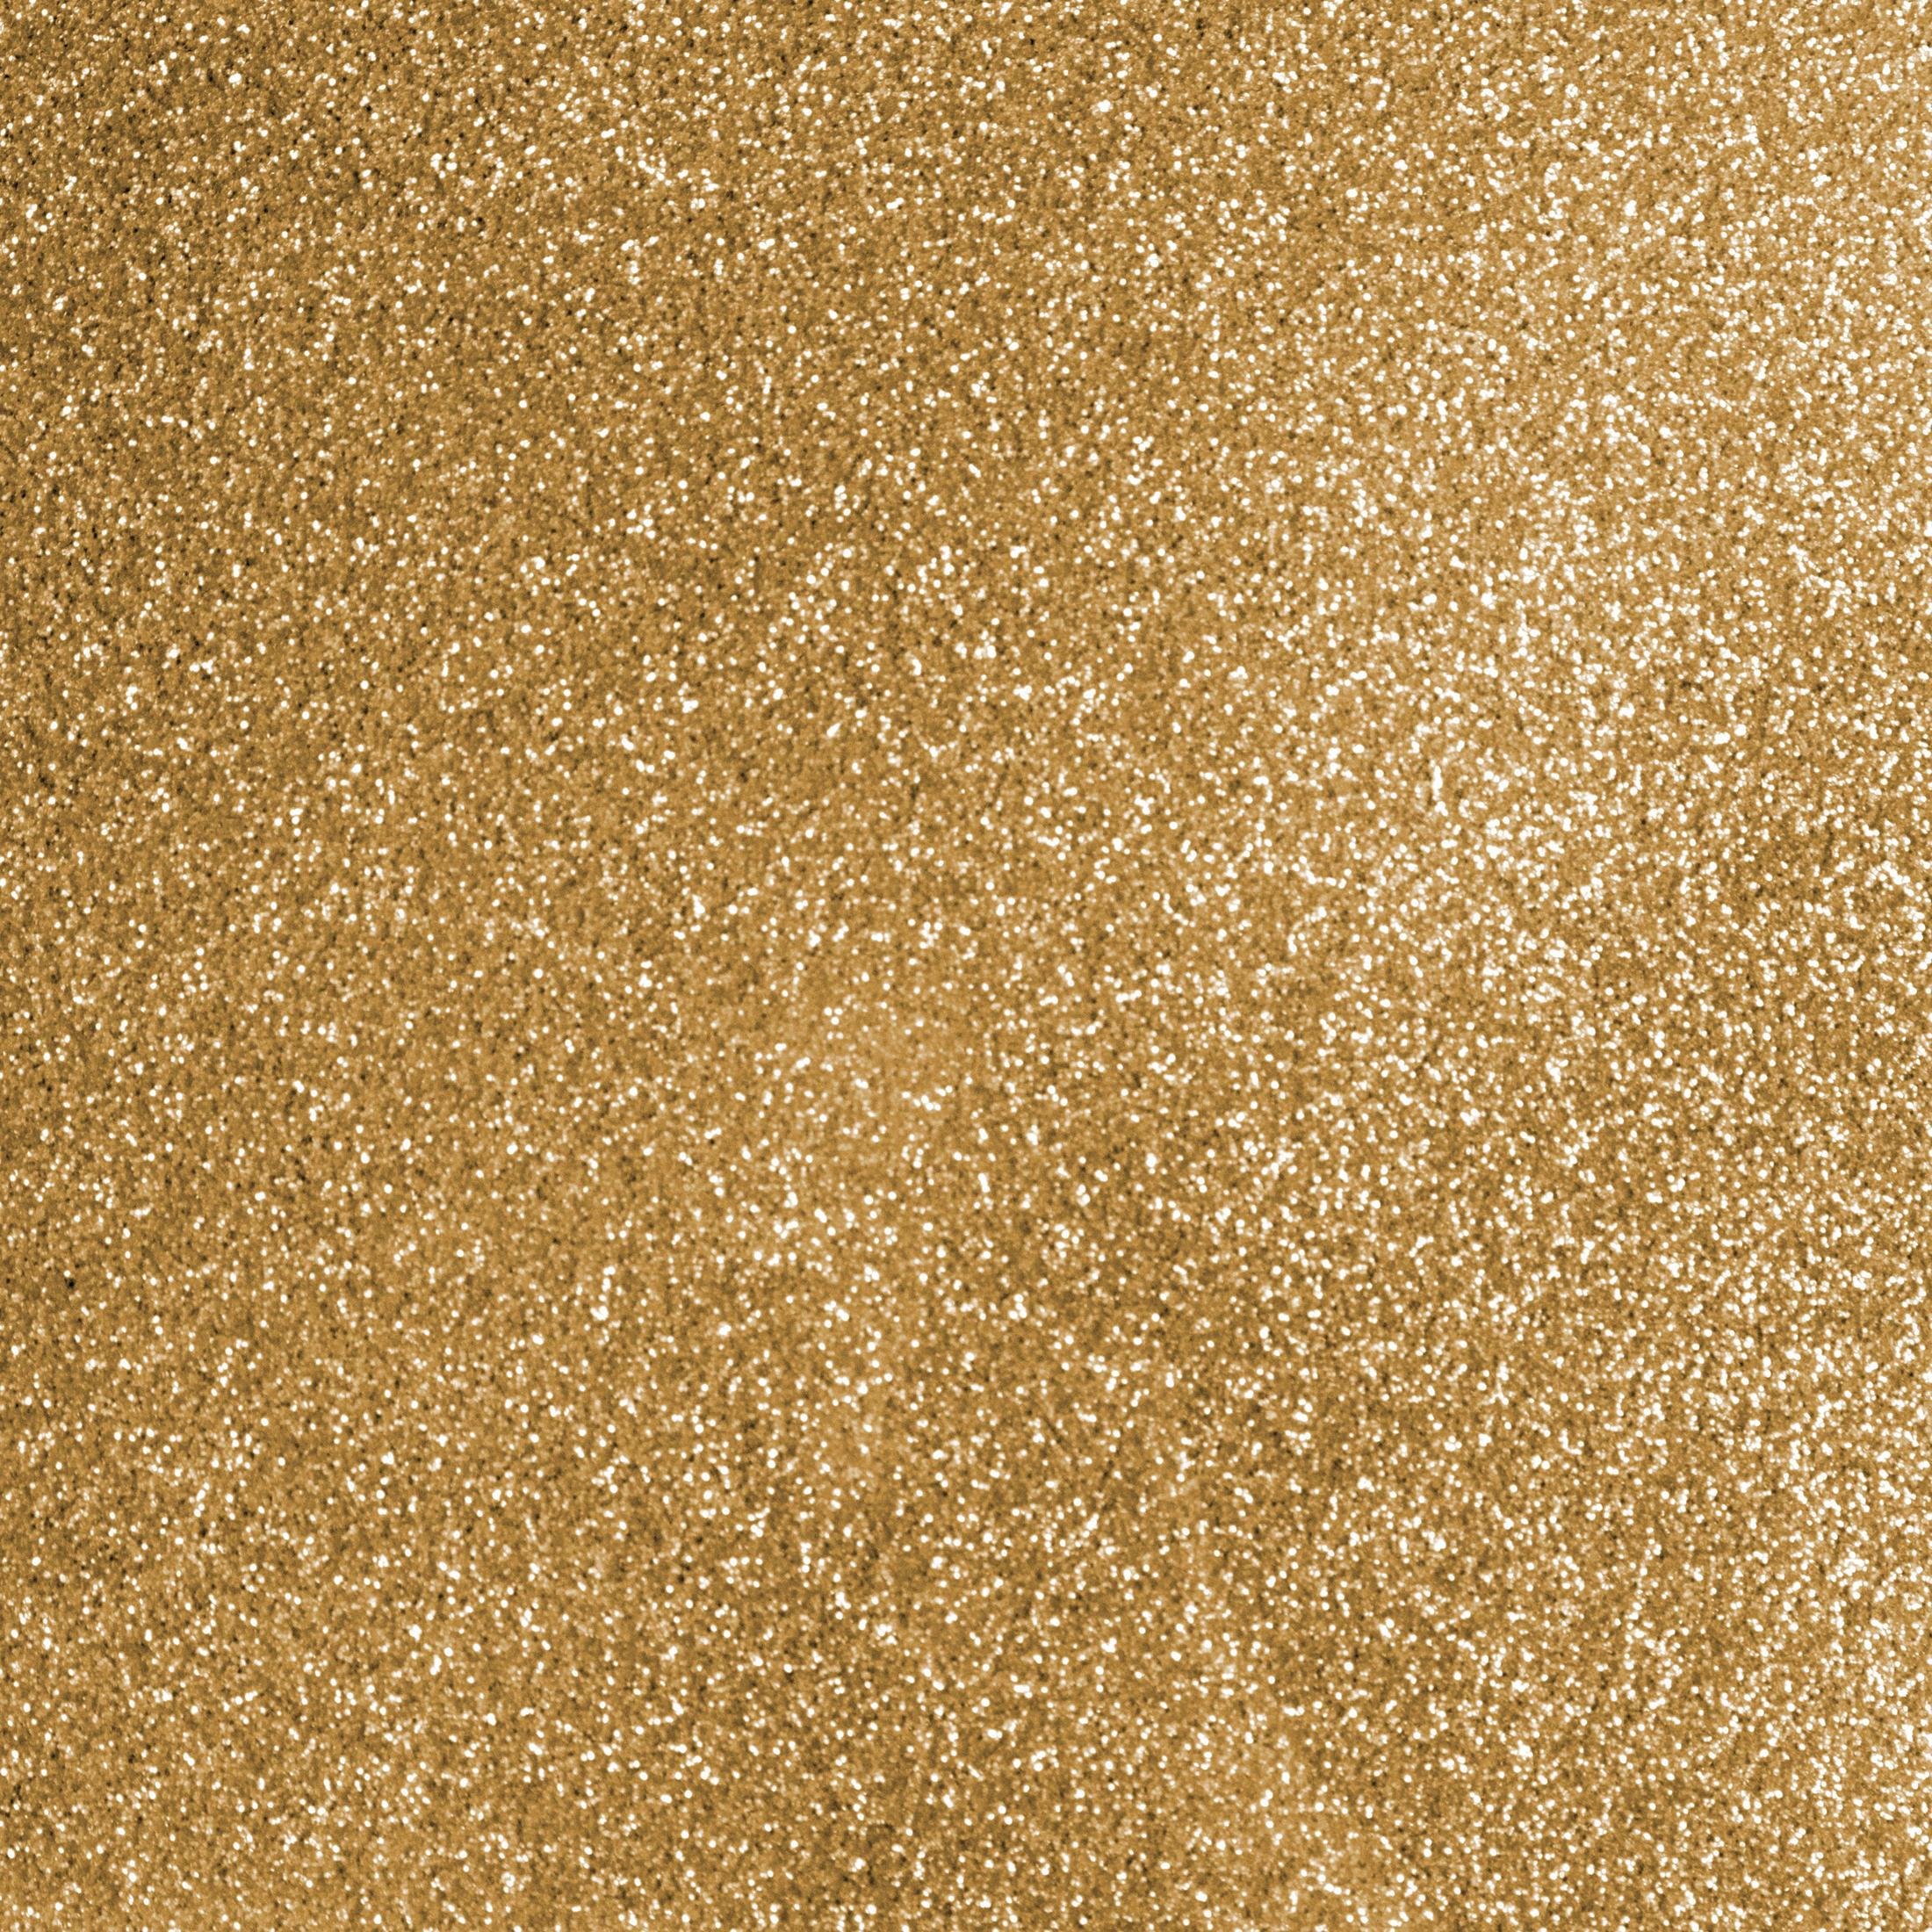 SIO Gold 1 CRICUT 2008673 Bügelfolie GOLD GLITTER SHEET Glitter